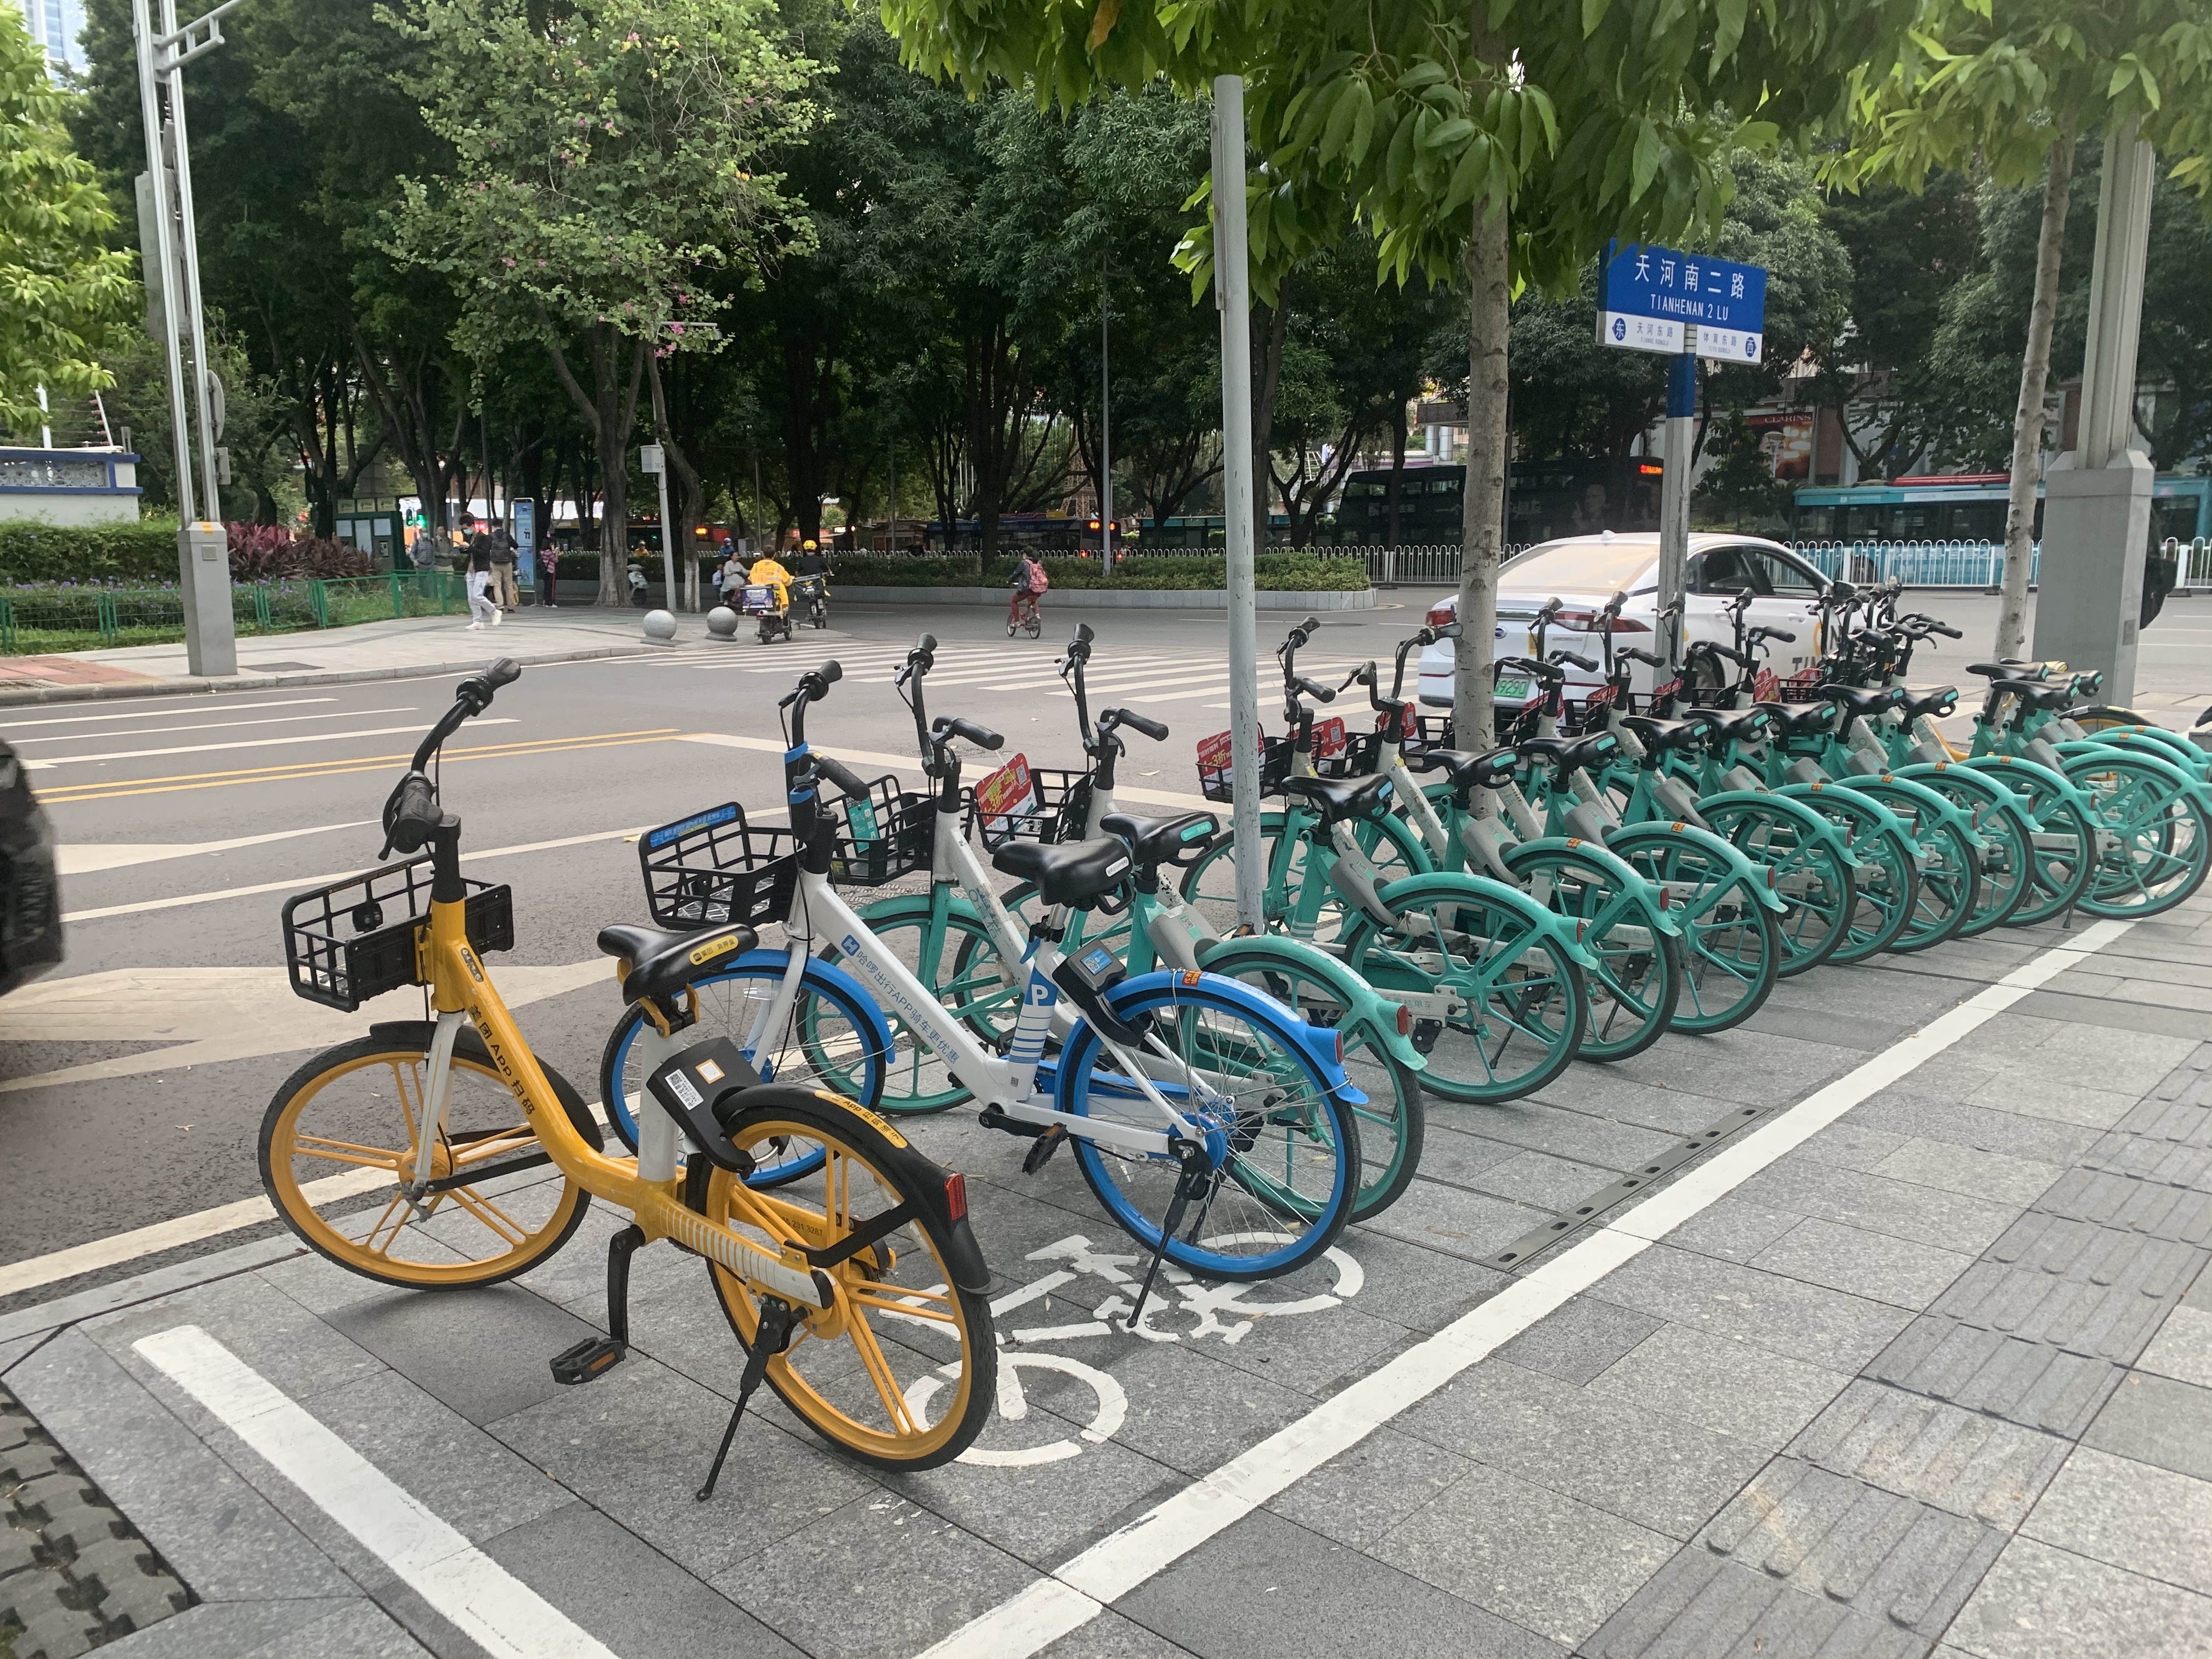 共享单车治理广州经验:在便民与秩序之间寻得平衡